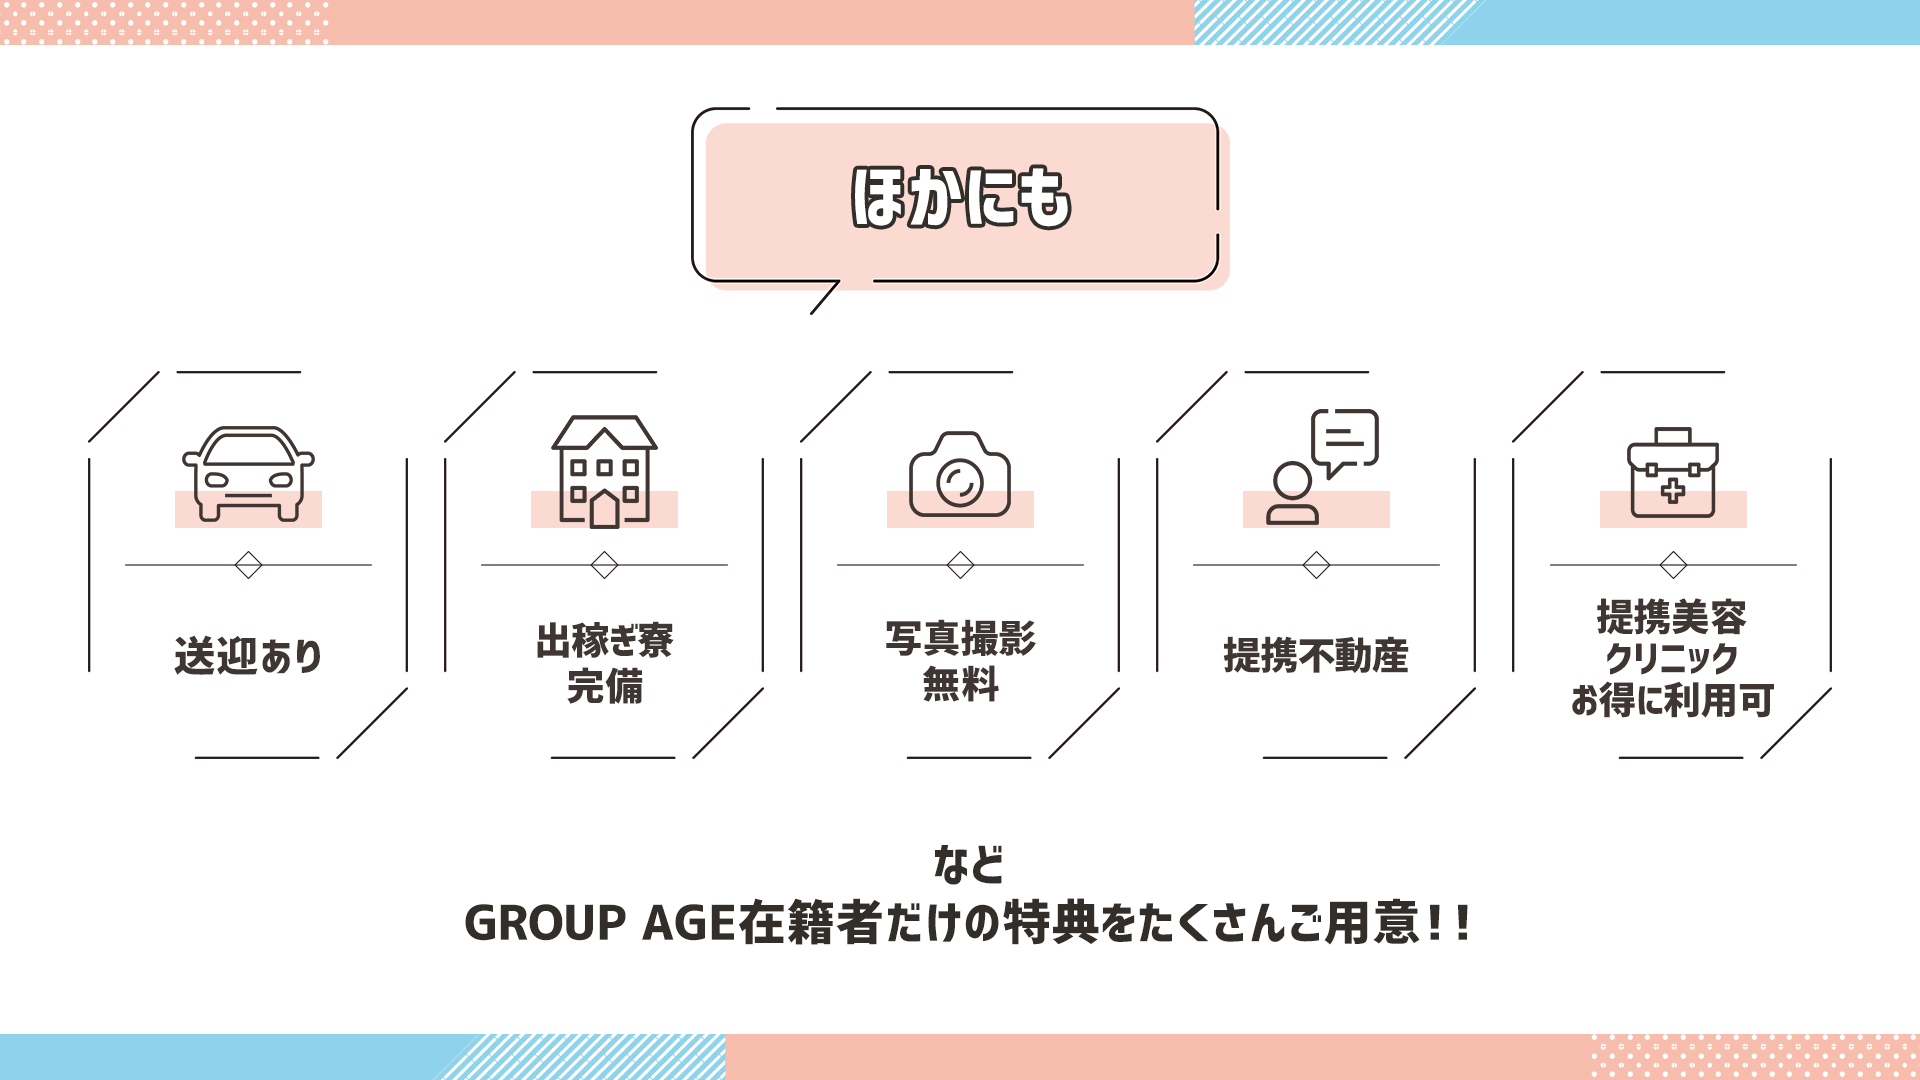 GROUP AGE－グループアージュ